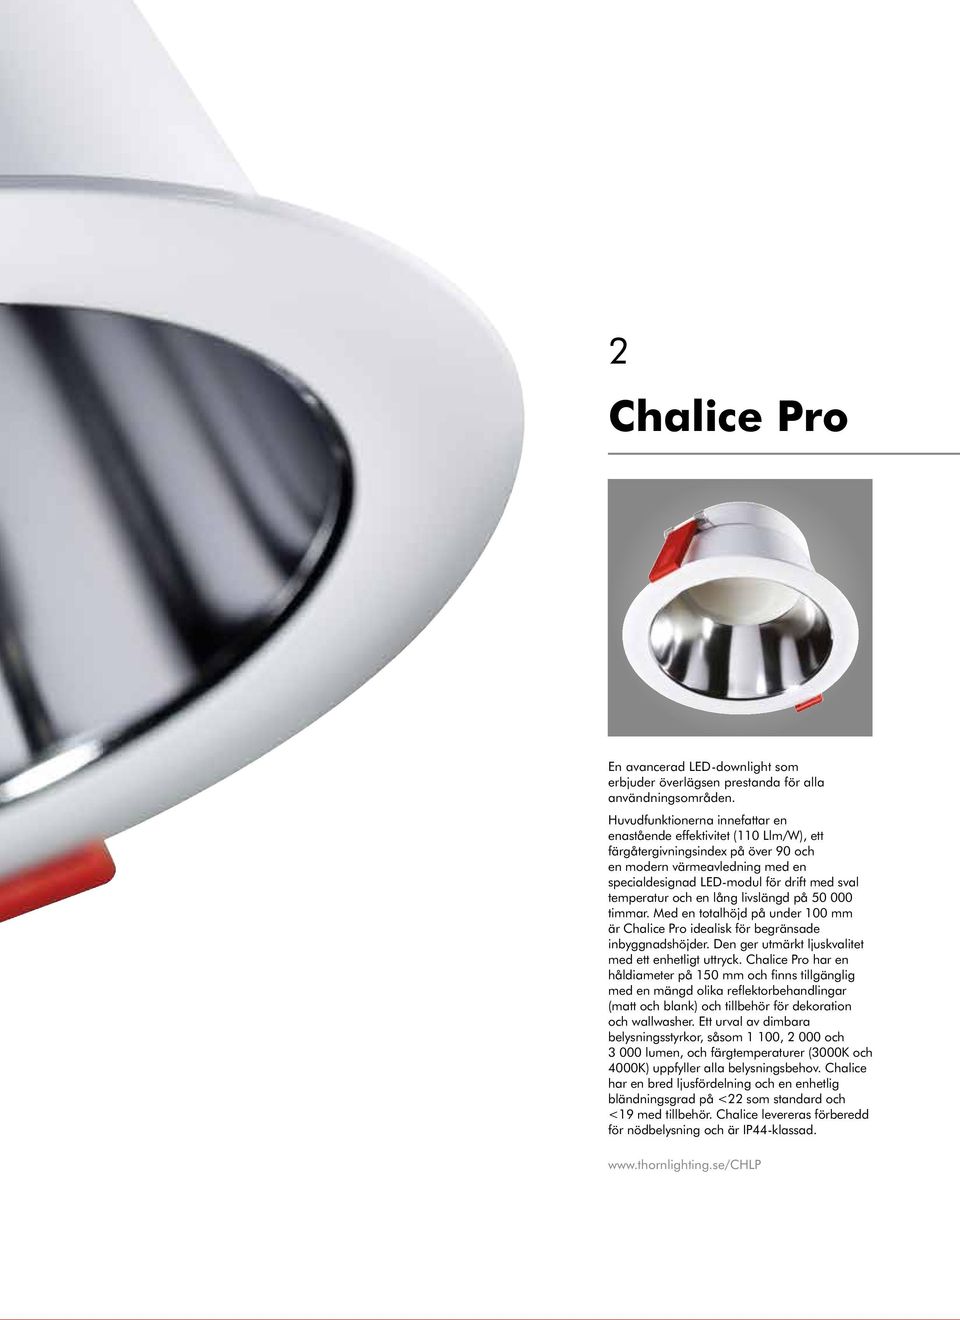 och en lång livslängd på 50 000 timmar. Med en totalhöjd på under 100 mm är Chalice Pro idealisk för begränsade inbyggnadshöjder. Den ger utmärkt ljuskvalitet med ett enhetligt uttryck.